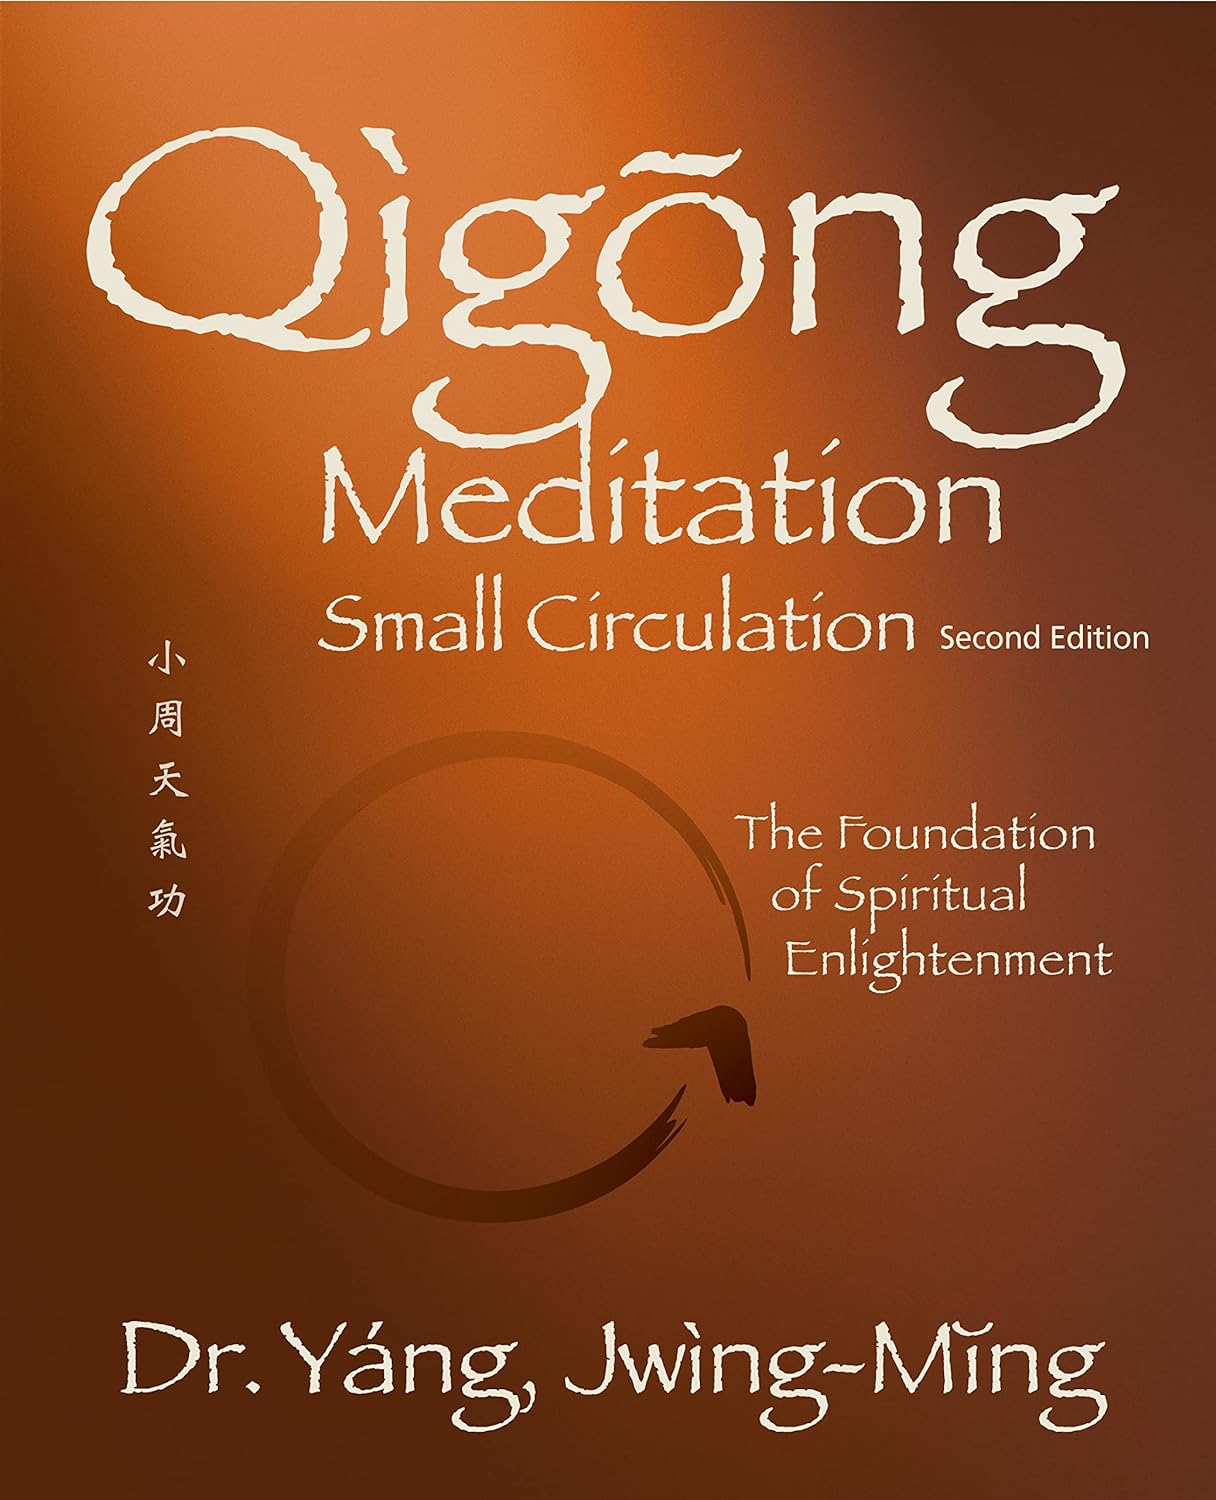 Qigong Meditation: Small Circulation (Qigong Foundation) Book by Dr Yang, Jwing-Ming (2nd Edition)